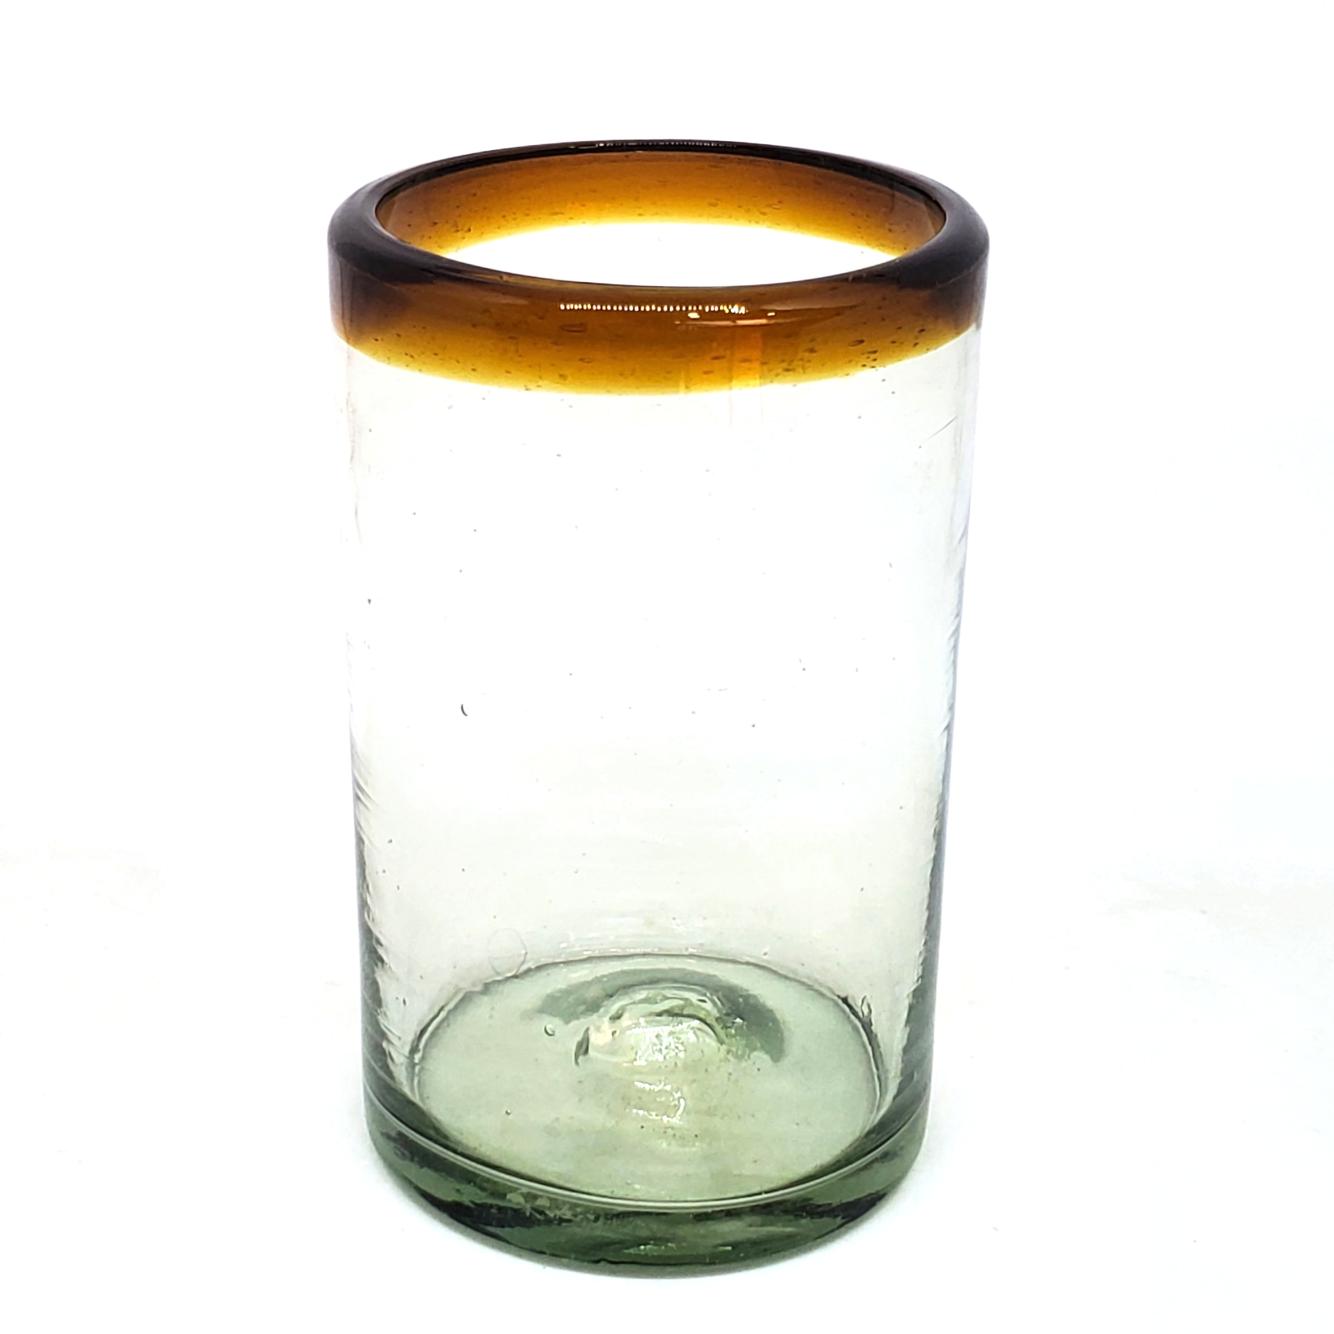 Vasos de Vidrio Soplado al Mayoreo / vasos grandes con borde color ámbar / Éstos artesanales vasos le darán un toque clásico a su bebida favorita.